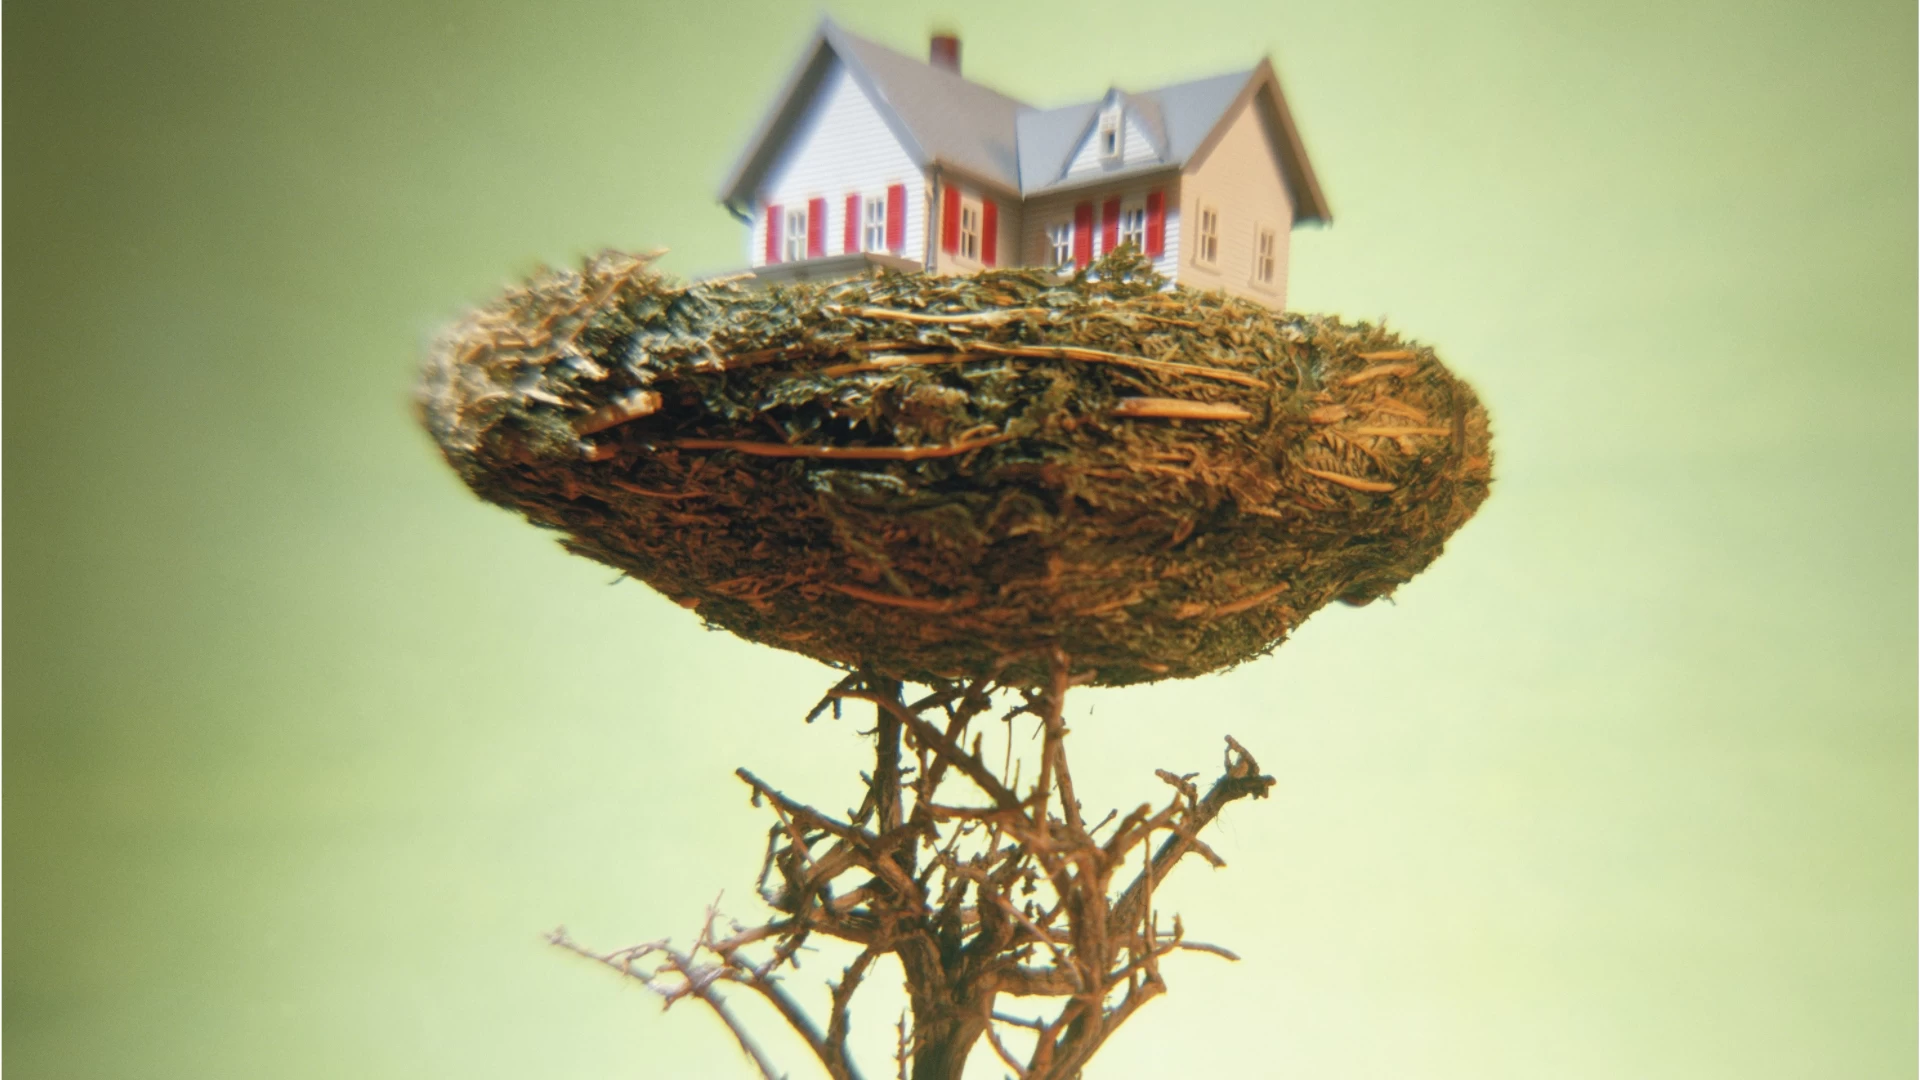 Nesting en casa: cómo transformar la casa en un nido